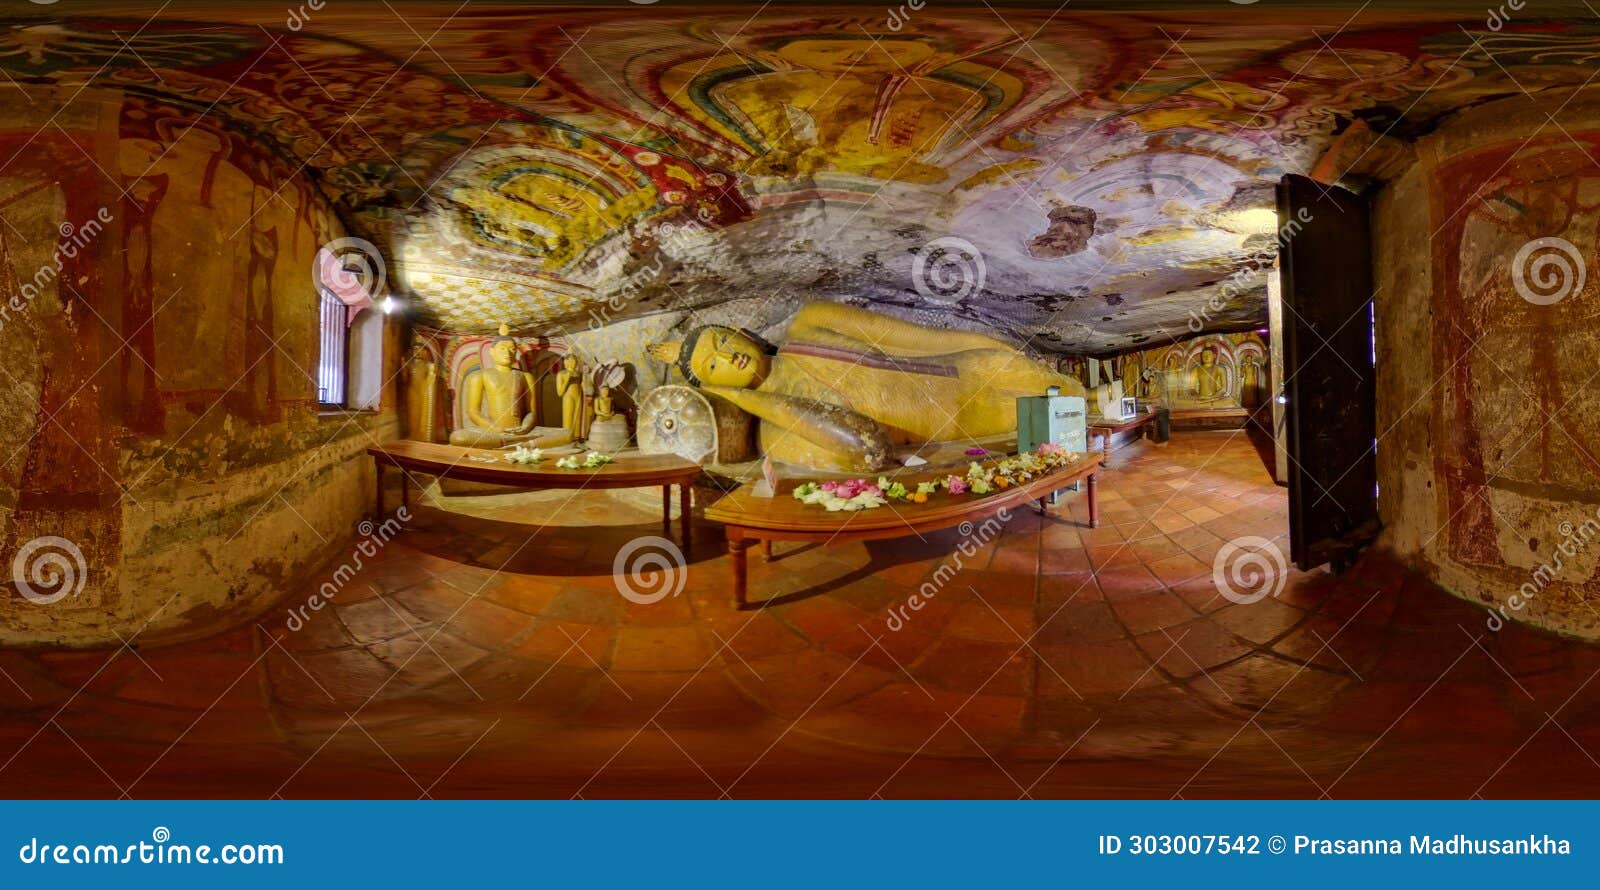 dambulla cave art in sri lanka